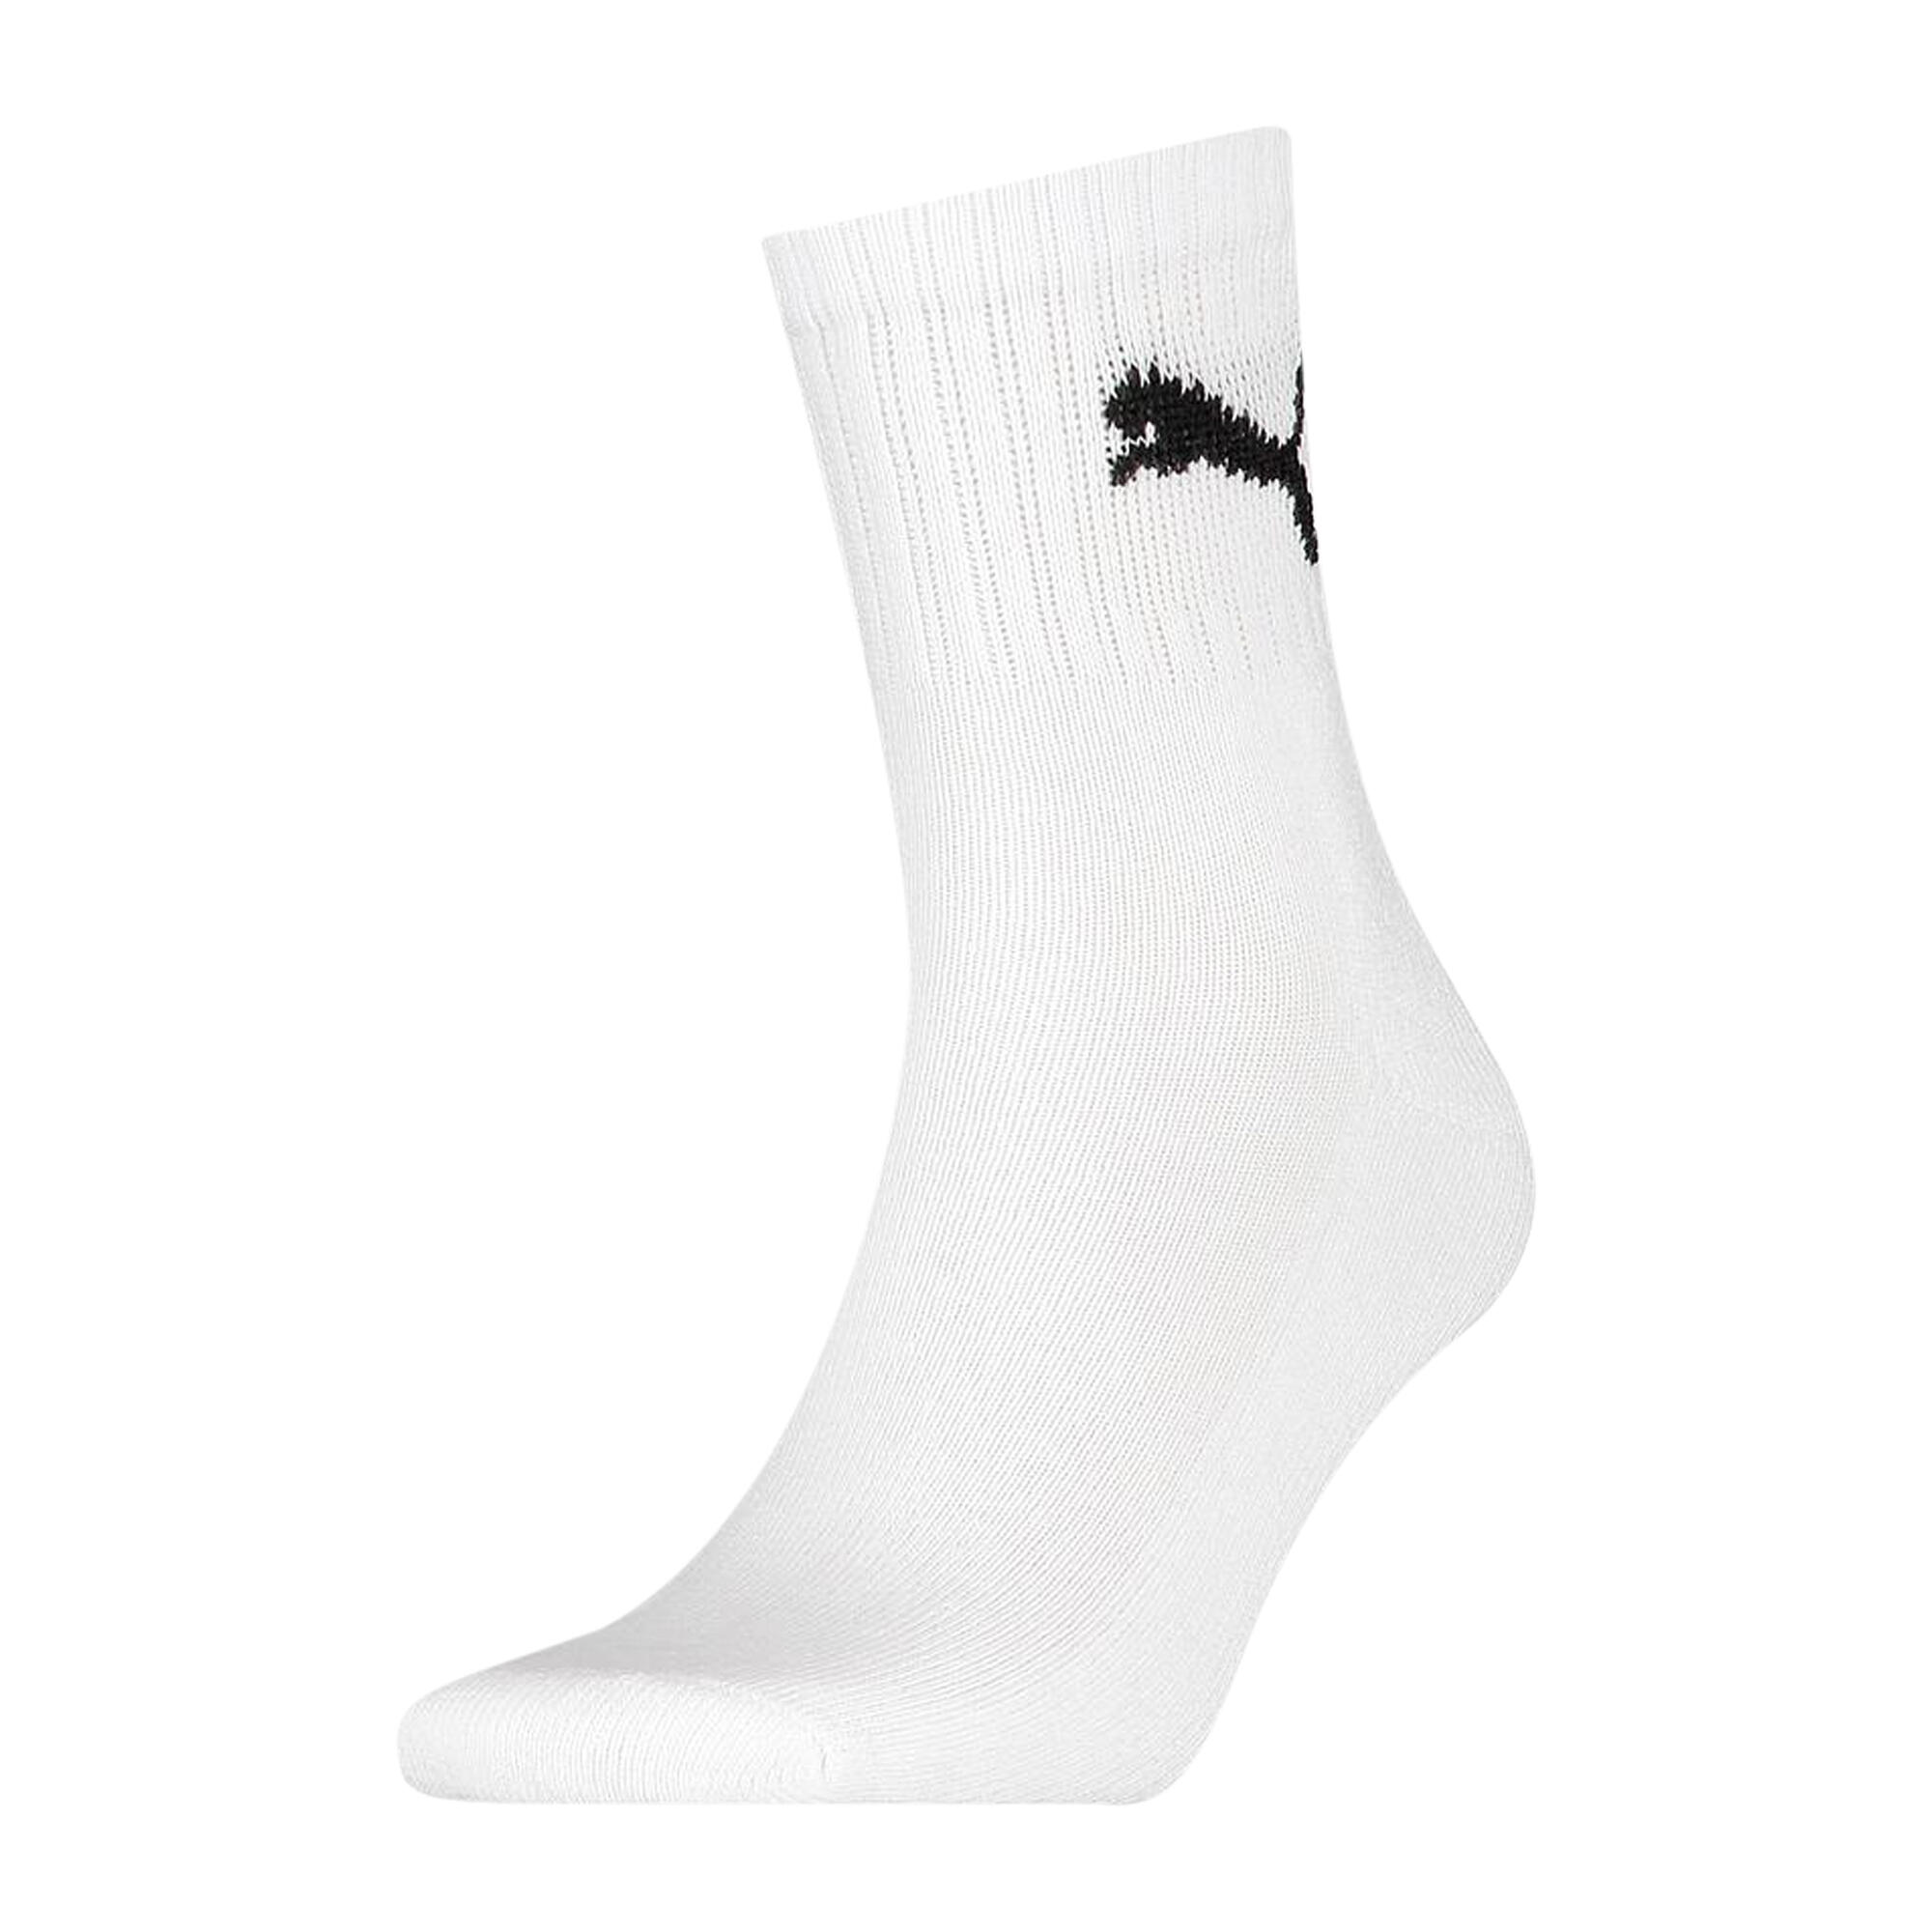 Unisex Adult Crew Socks (Pack of 3) (White) 1/3